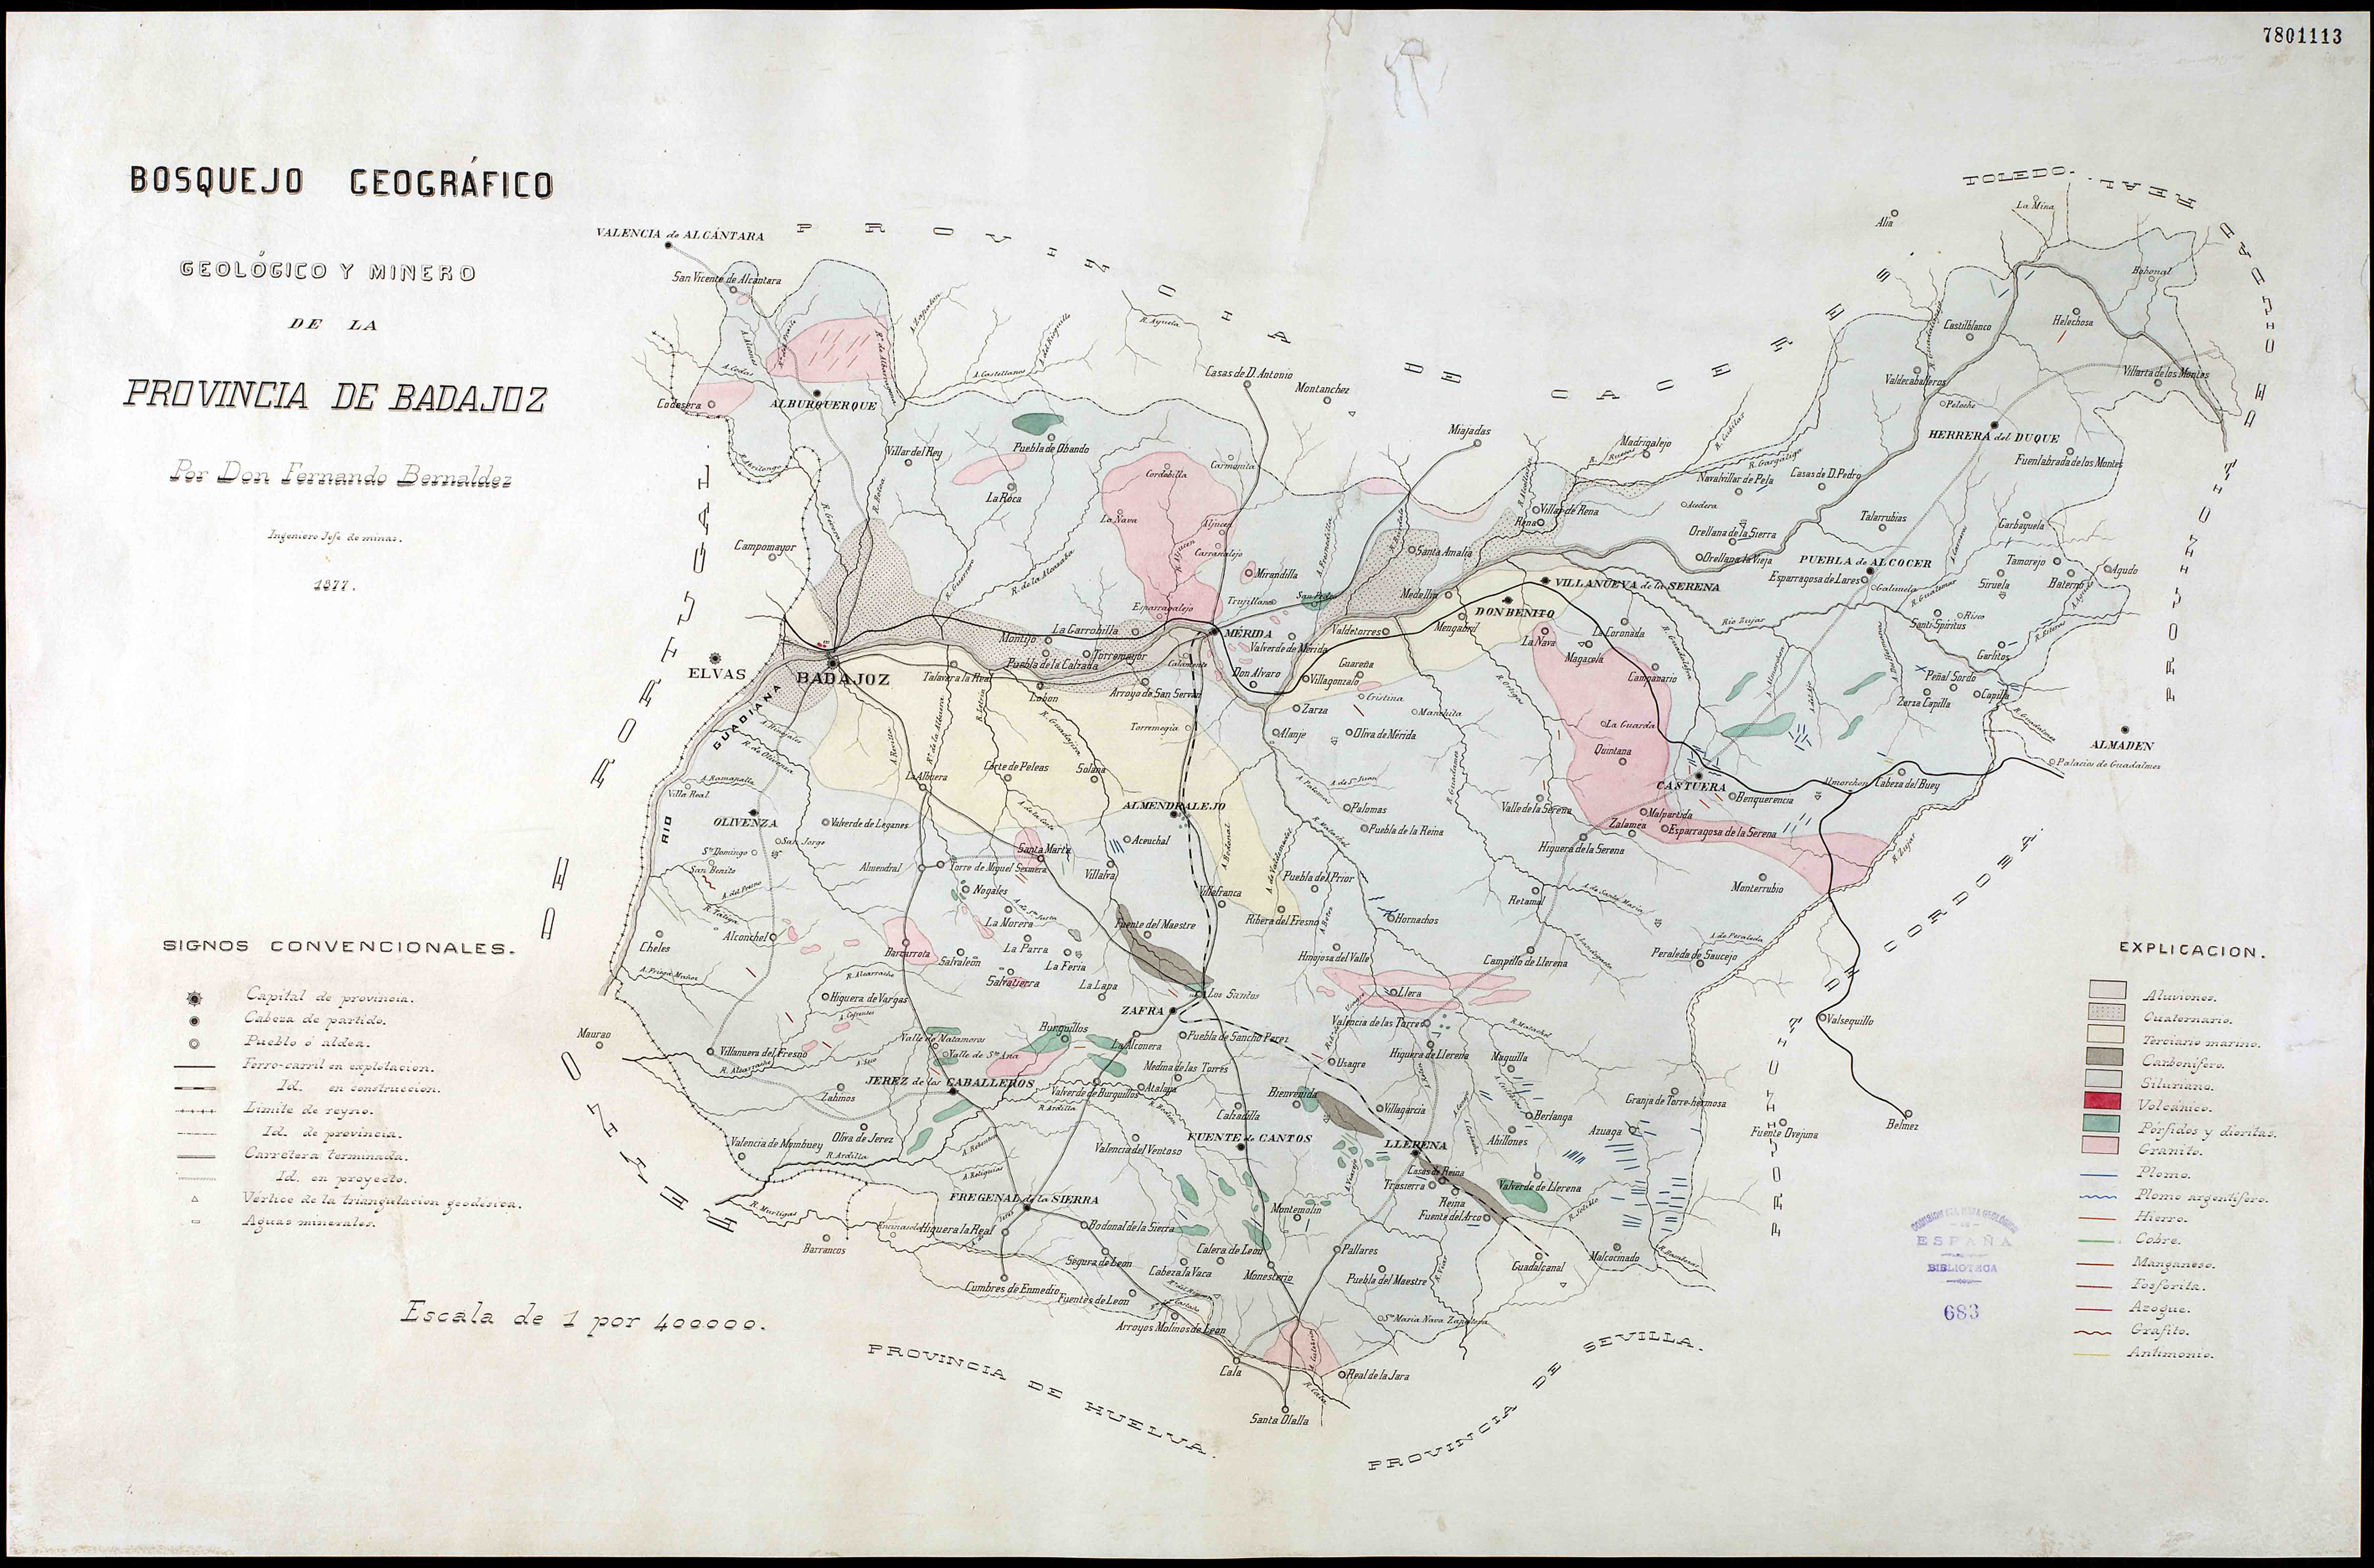 Bosquejo geográfico, geológico y minero de la provincia de Badajoz